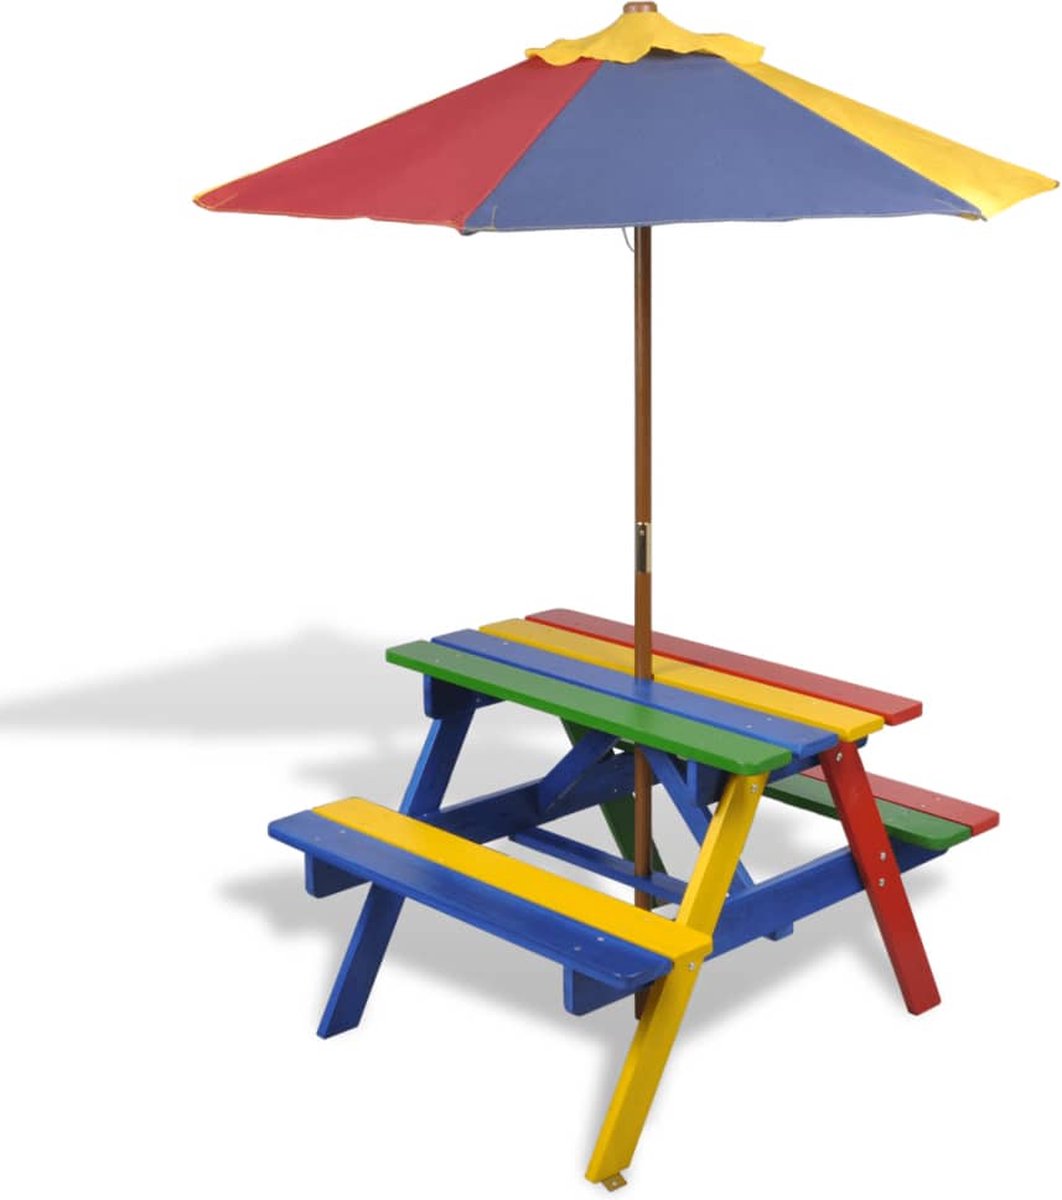 VidaLife Kinderpicknicktafel met banken en parasol hout meerkleurig